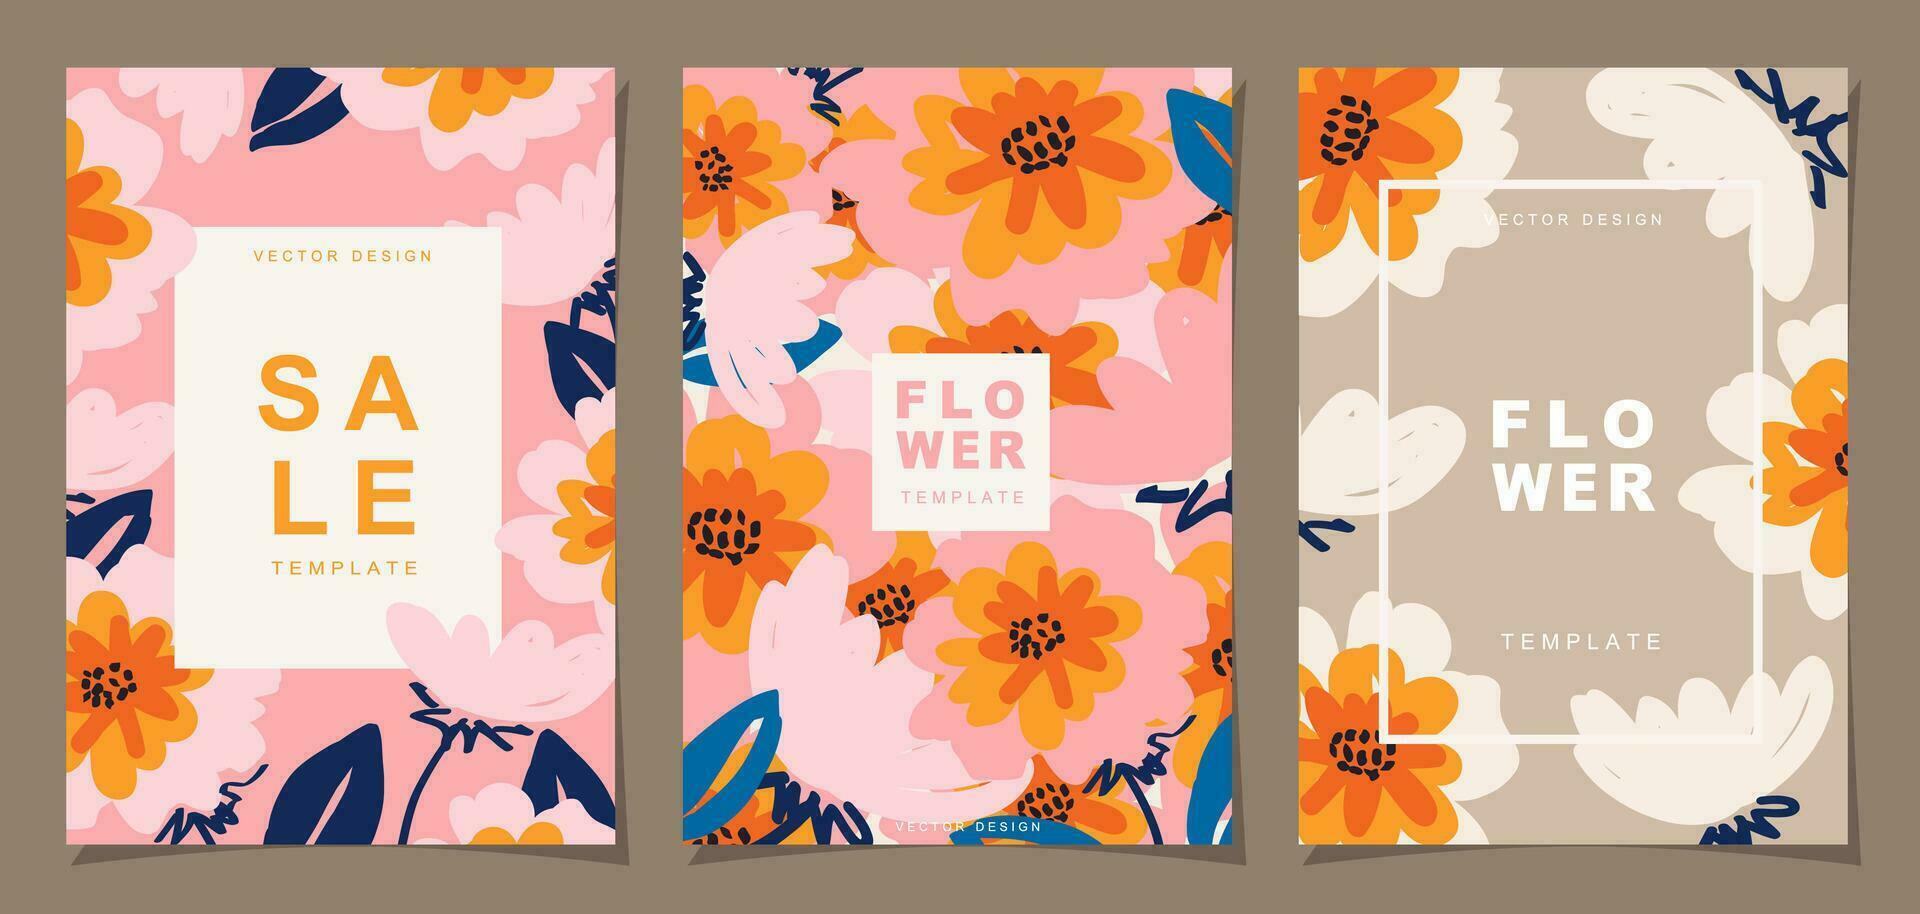 blomma mall uppsättning för affisch, kort, omslag, märka, baner i modern minimalistisk stil och enkel sommar design mallar med blom och växter. vektor